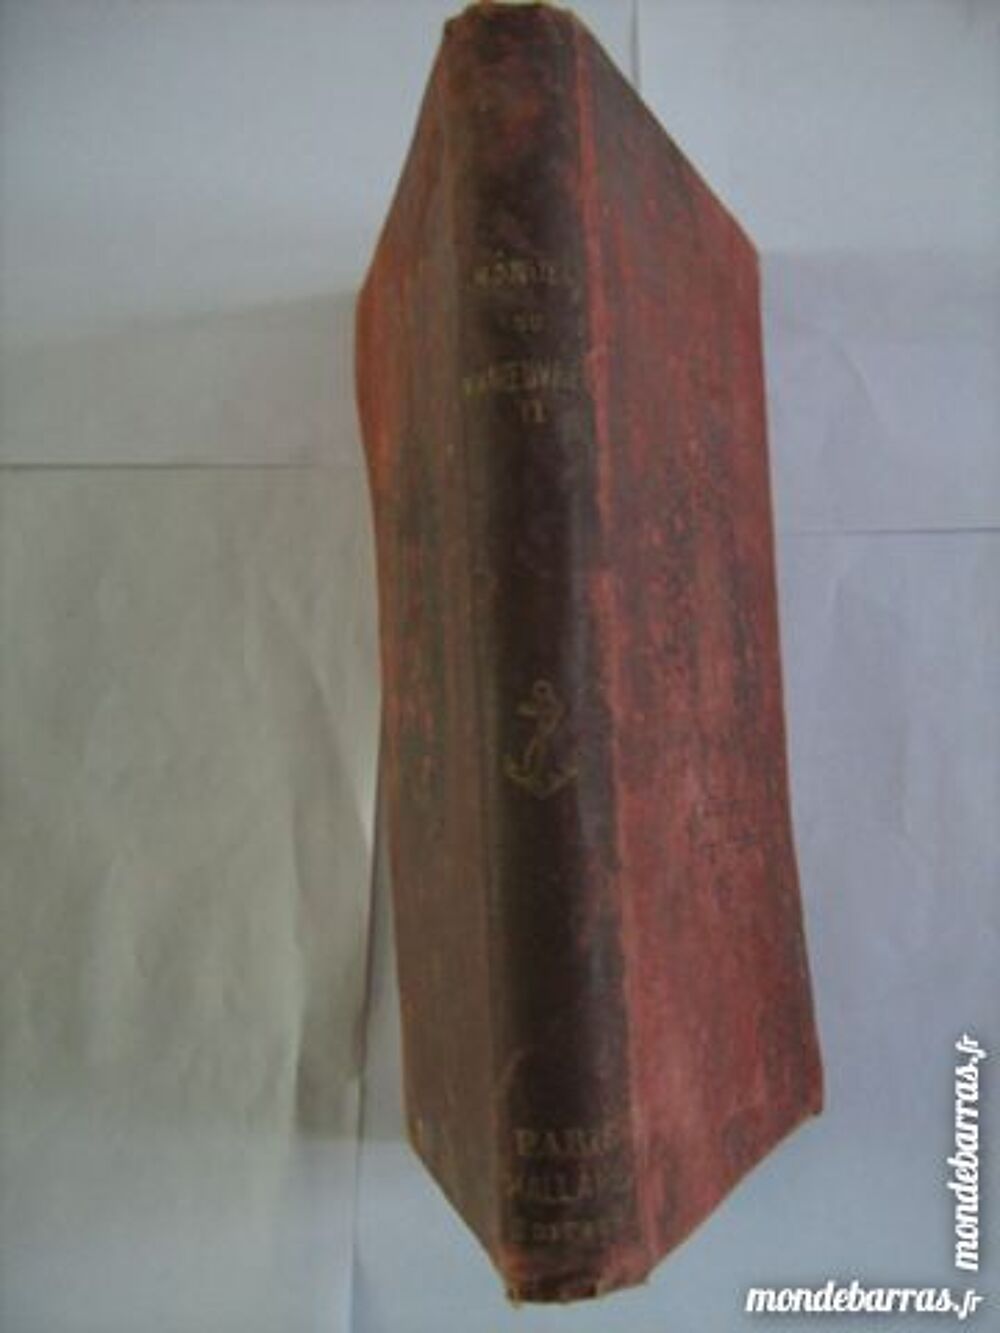 MANUEL DU MANOEUVRIER tome 2 - 1896 Livres et BD